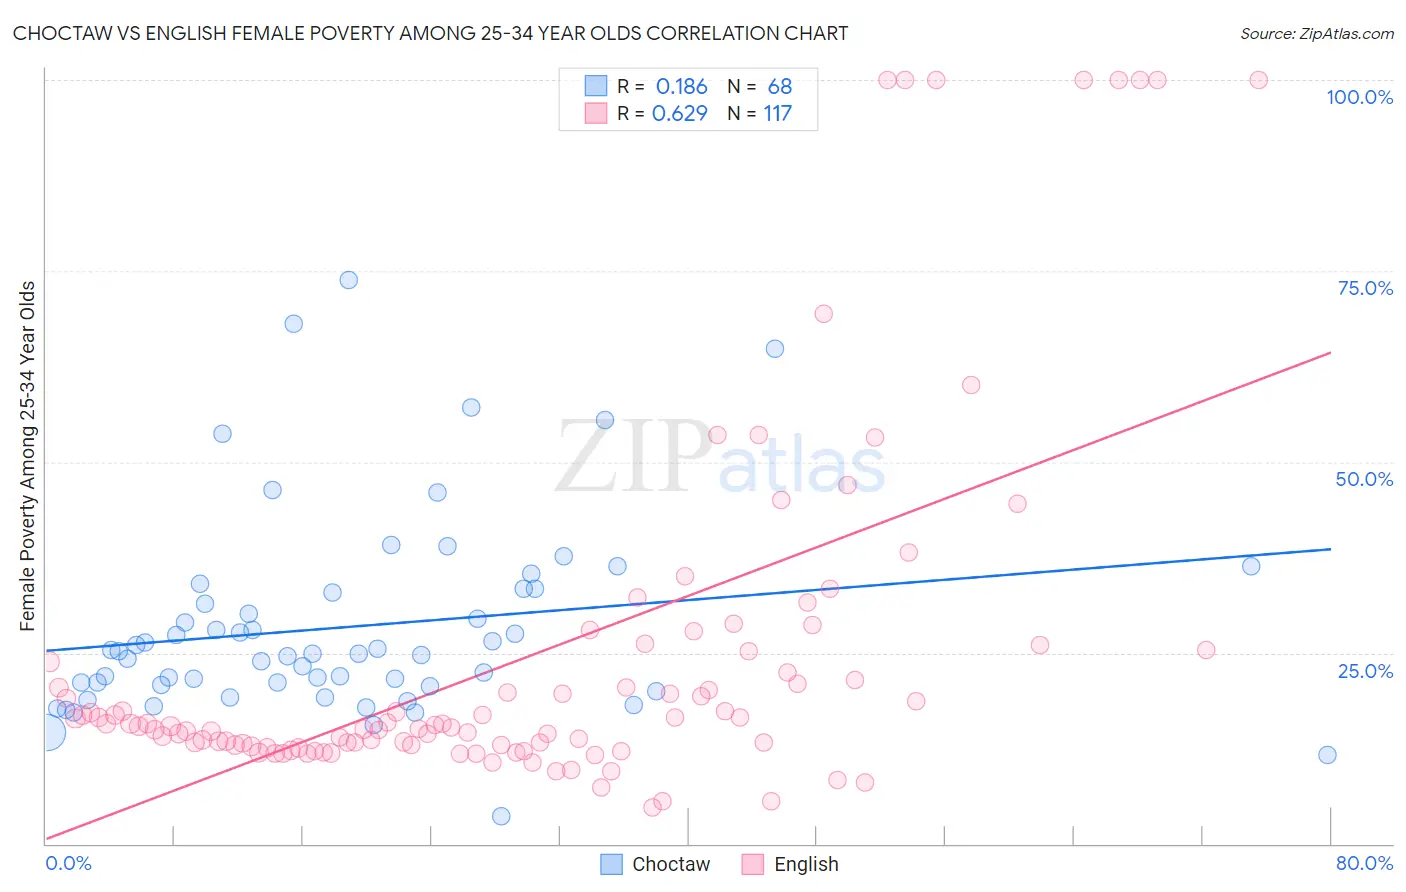 Choctaw vs English Female Poverty Among 25-34 Year Olds